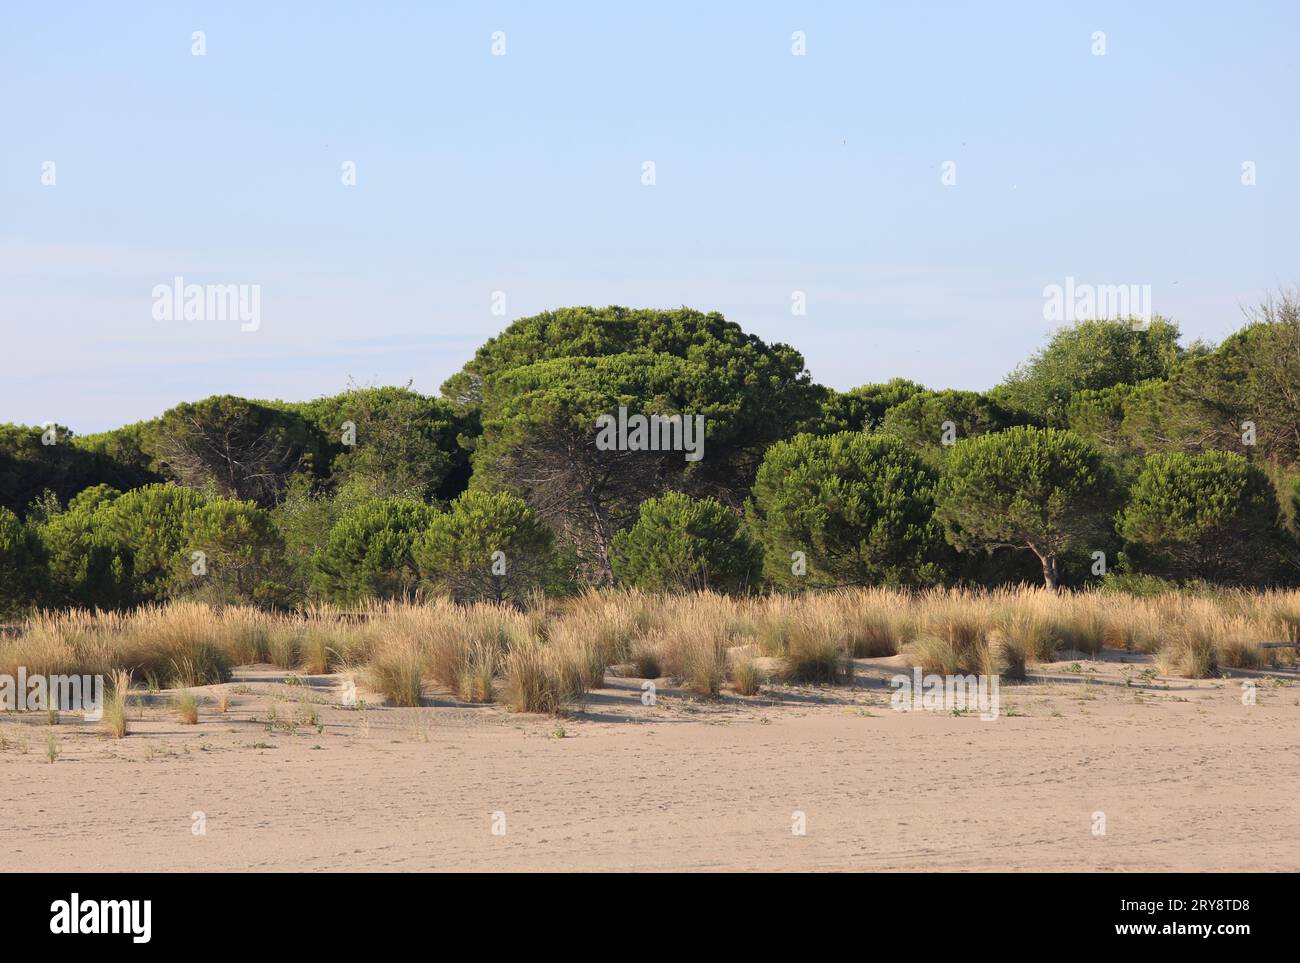 Environnement sauvage avec des arbustes et du sable typique de la région sud-européenne appelée maquis méditerranéen Banque D'Images